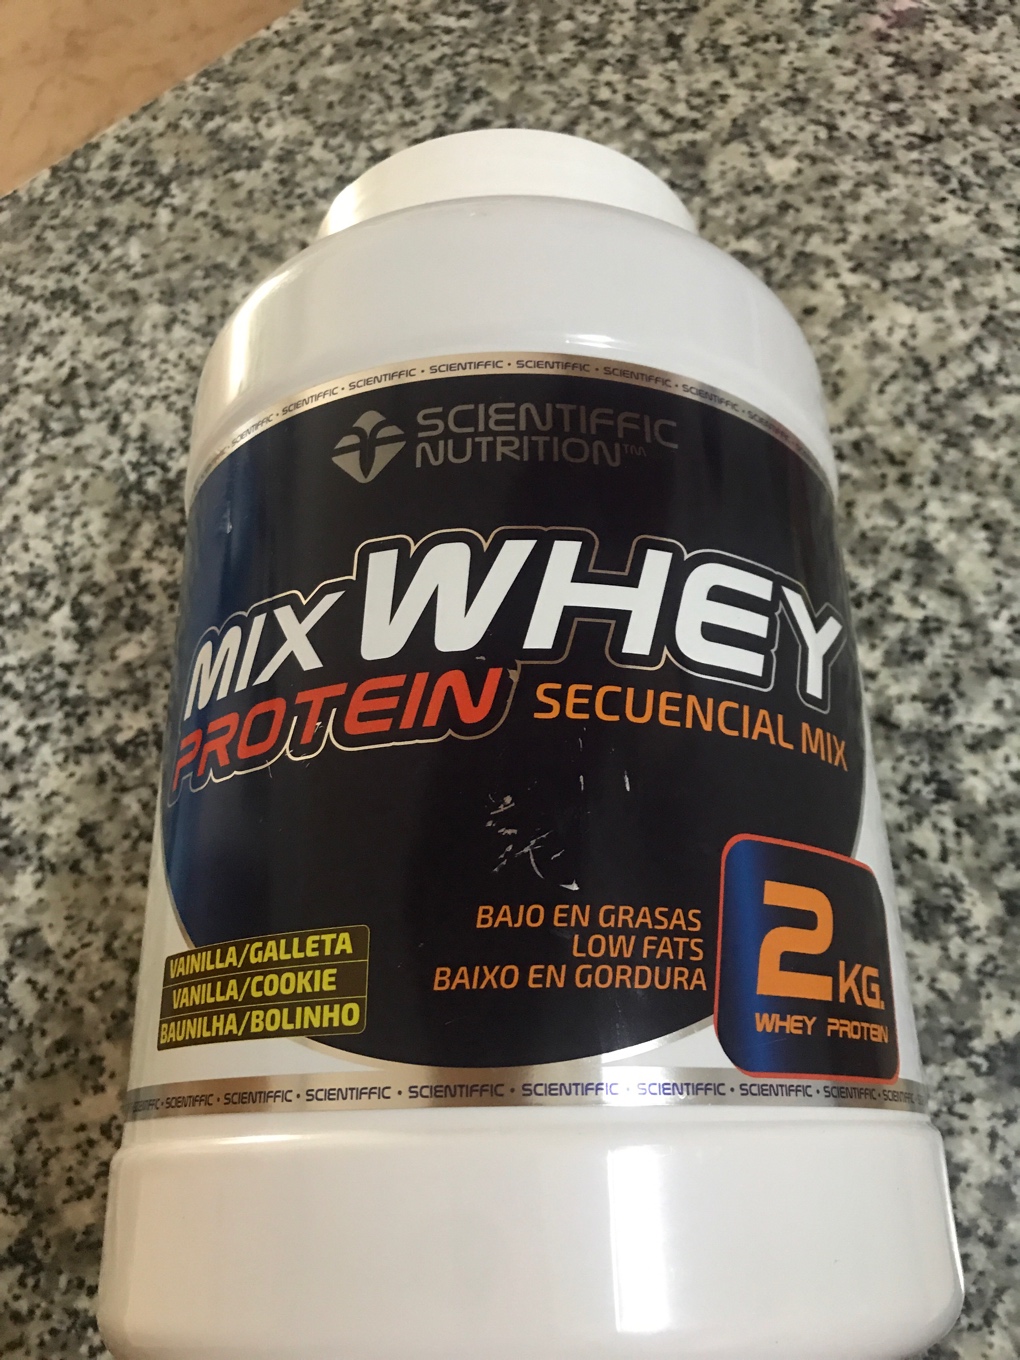 Mix Whey Protein